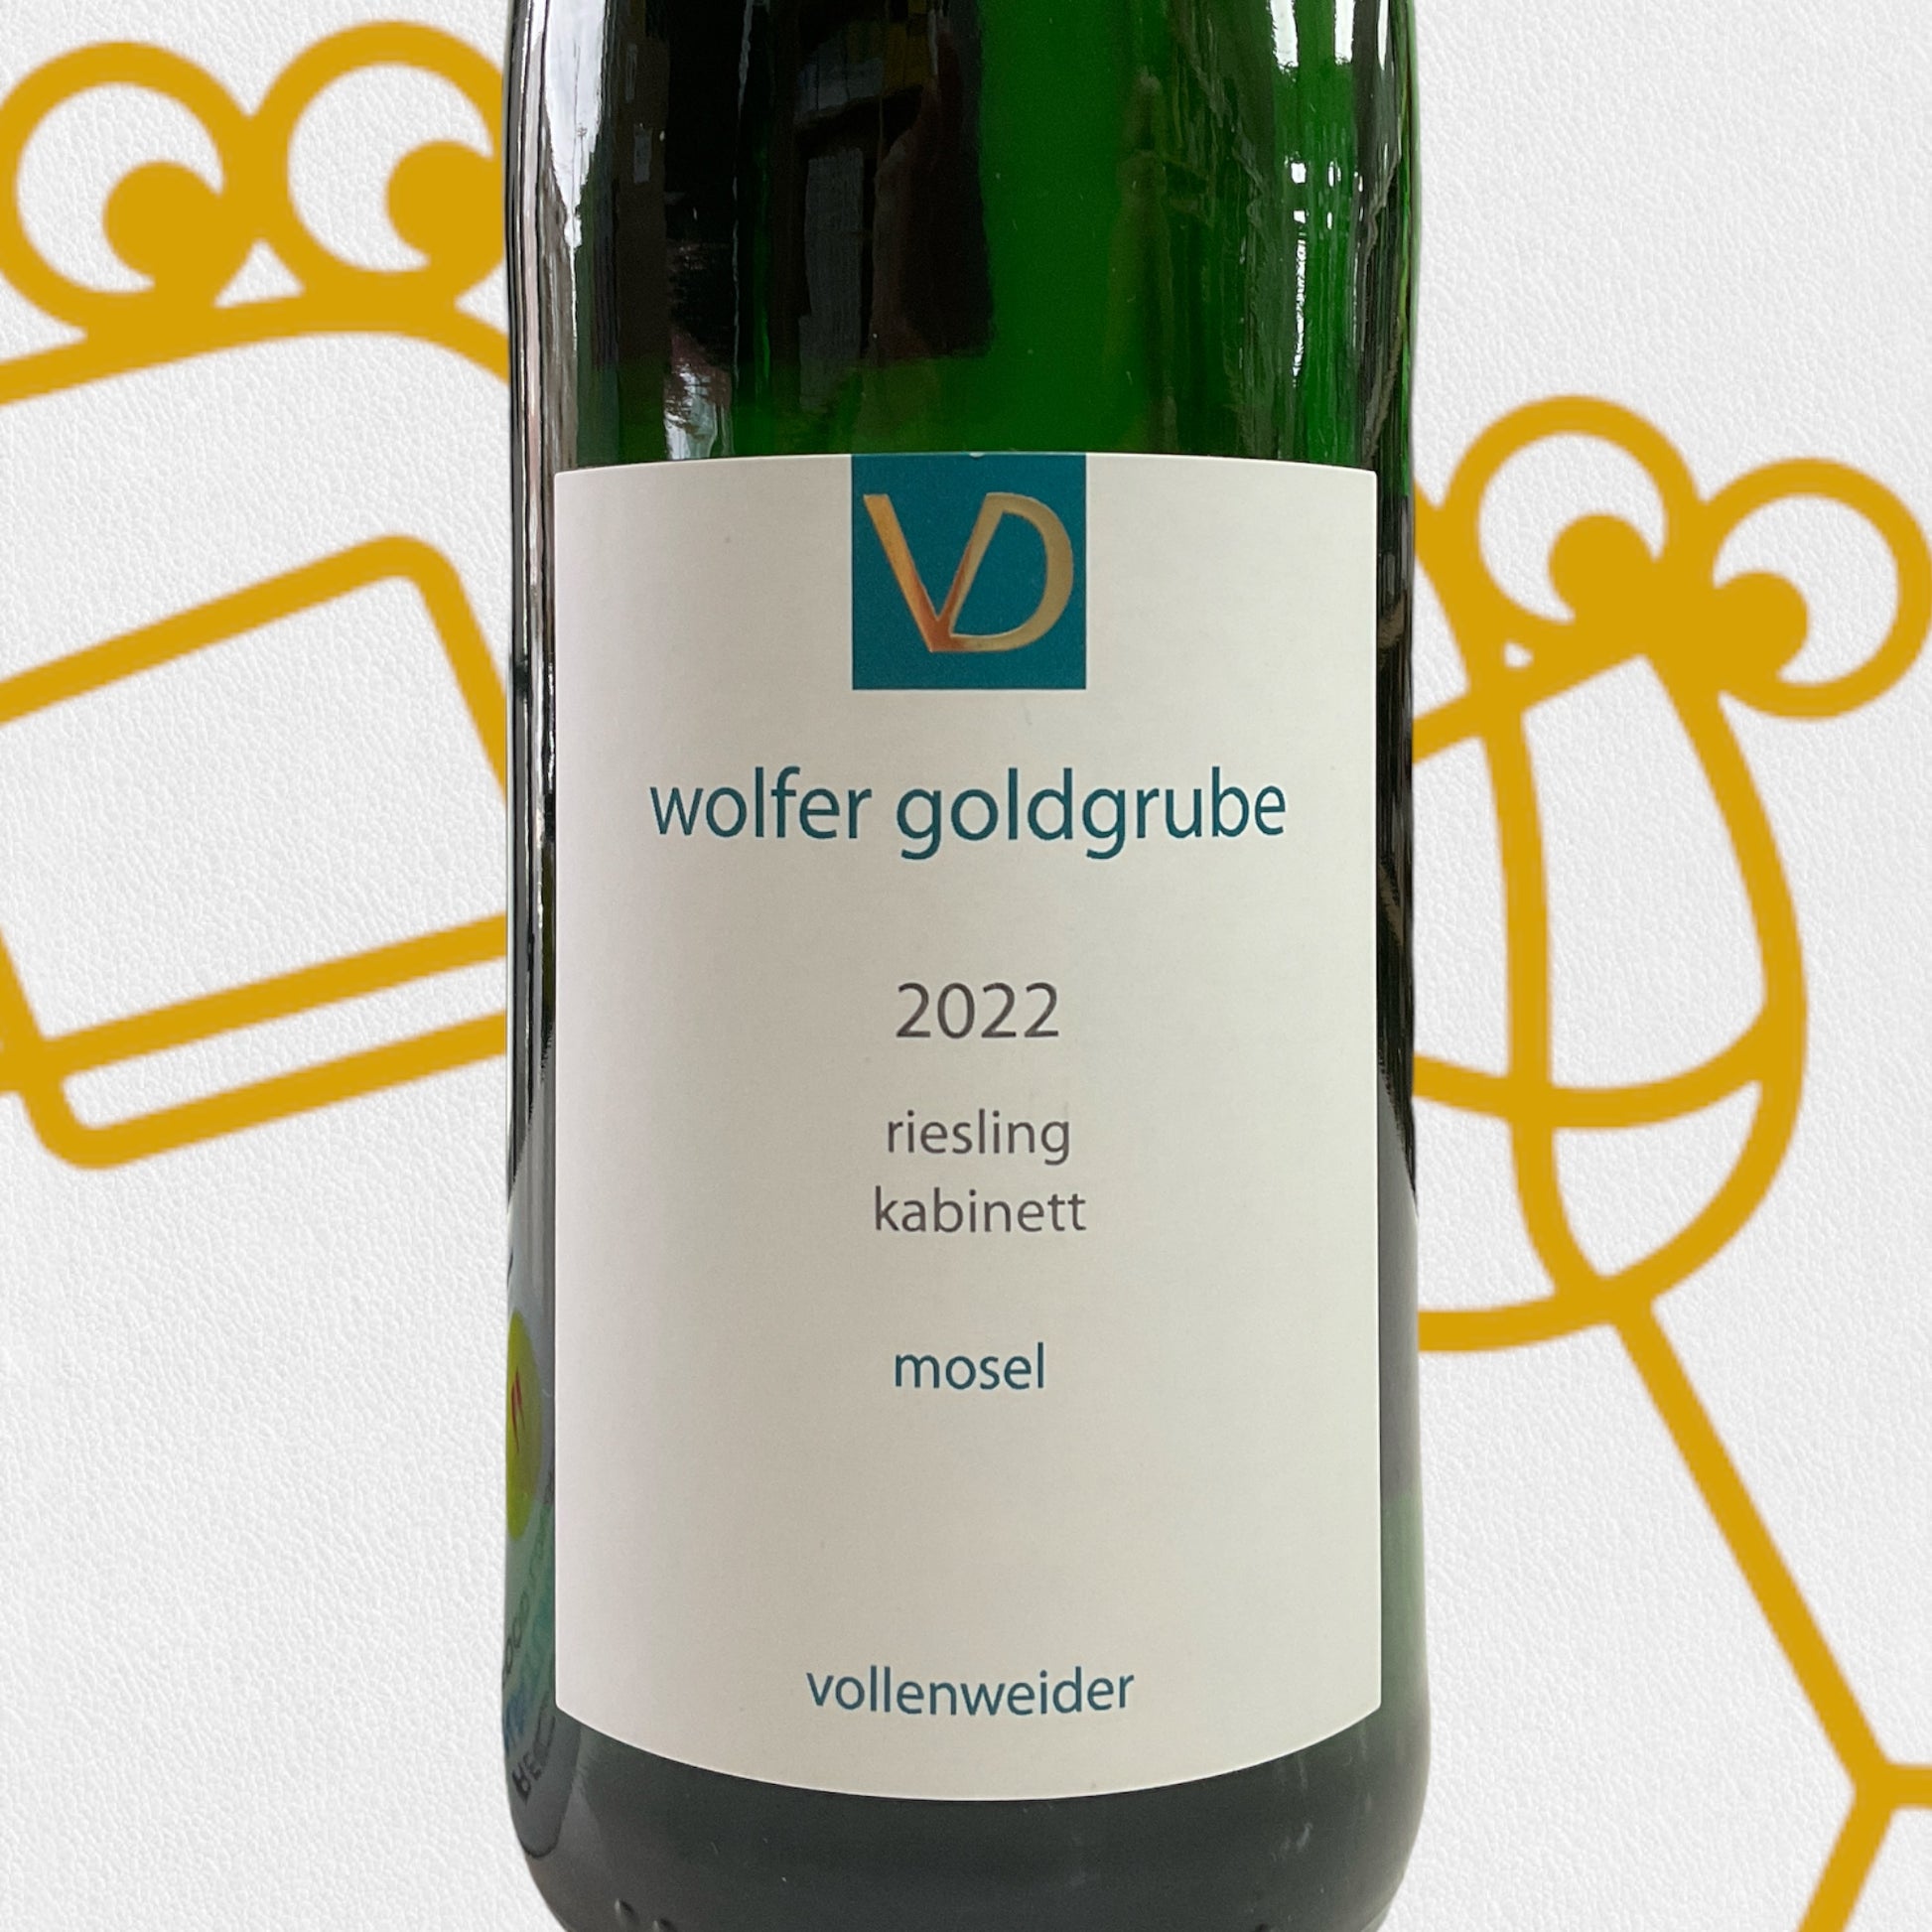 Weingut Daniel Vollenweider Wolfer Goldgrube Riesling Kabinett 2022 Mosel, Germany - Williston Park Wines & Spirits